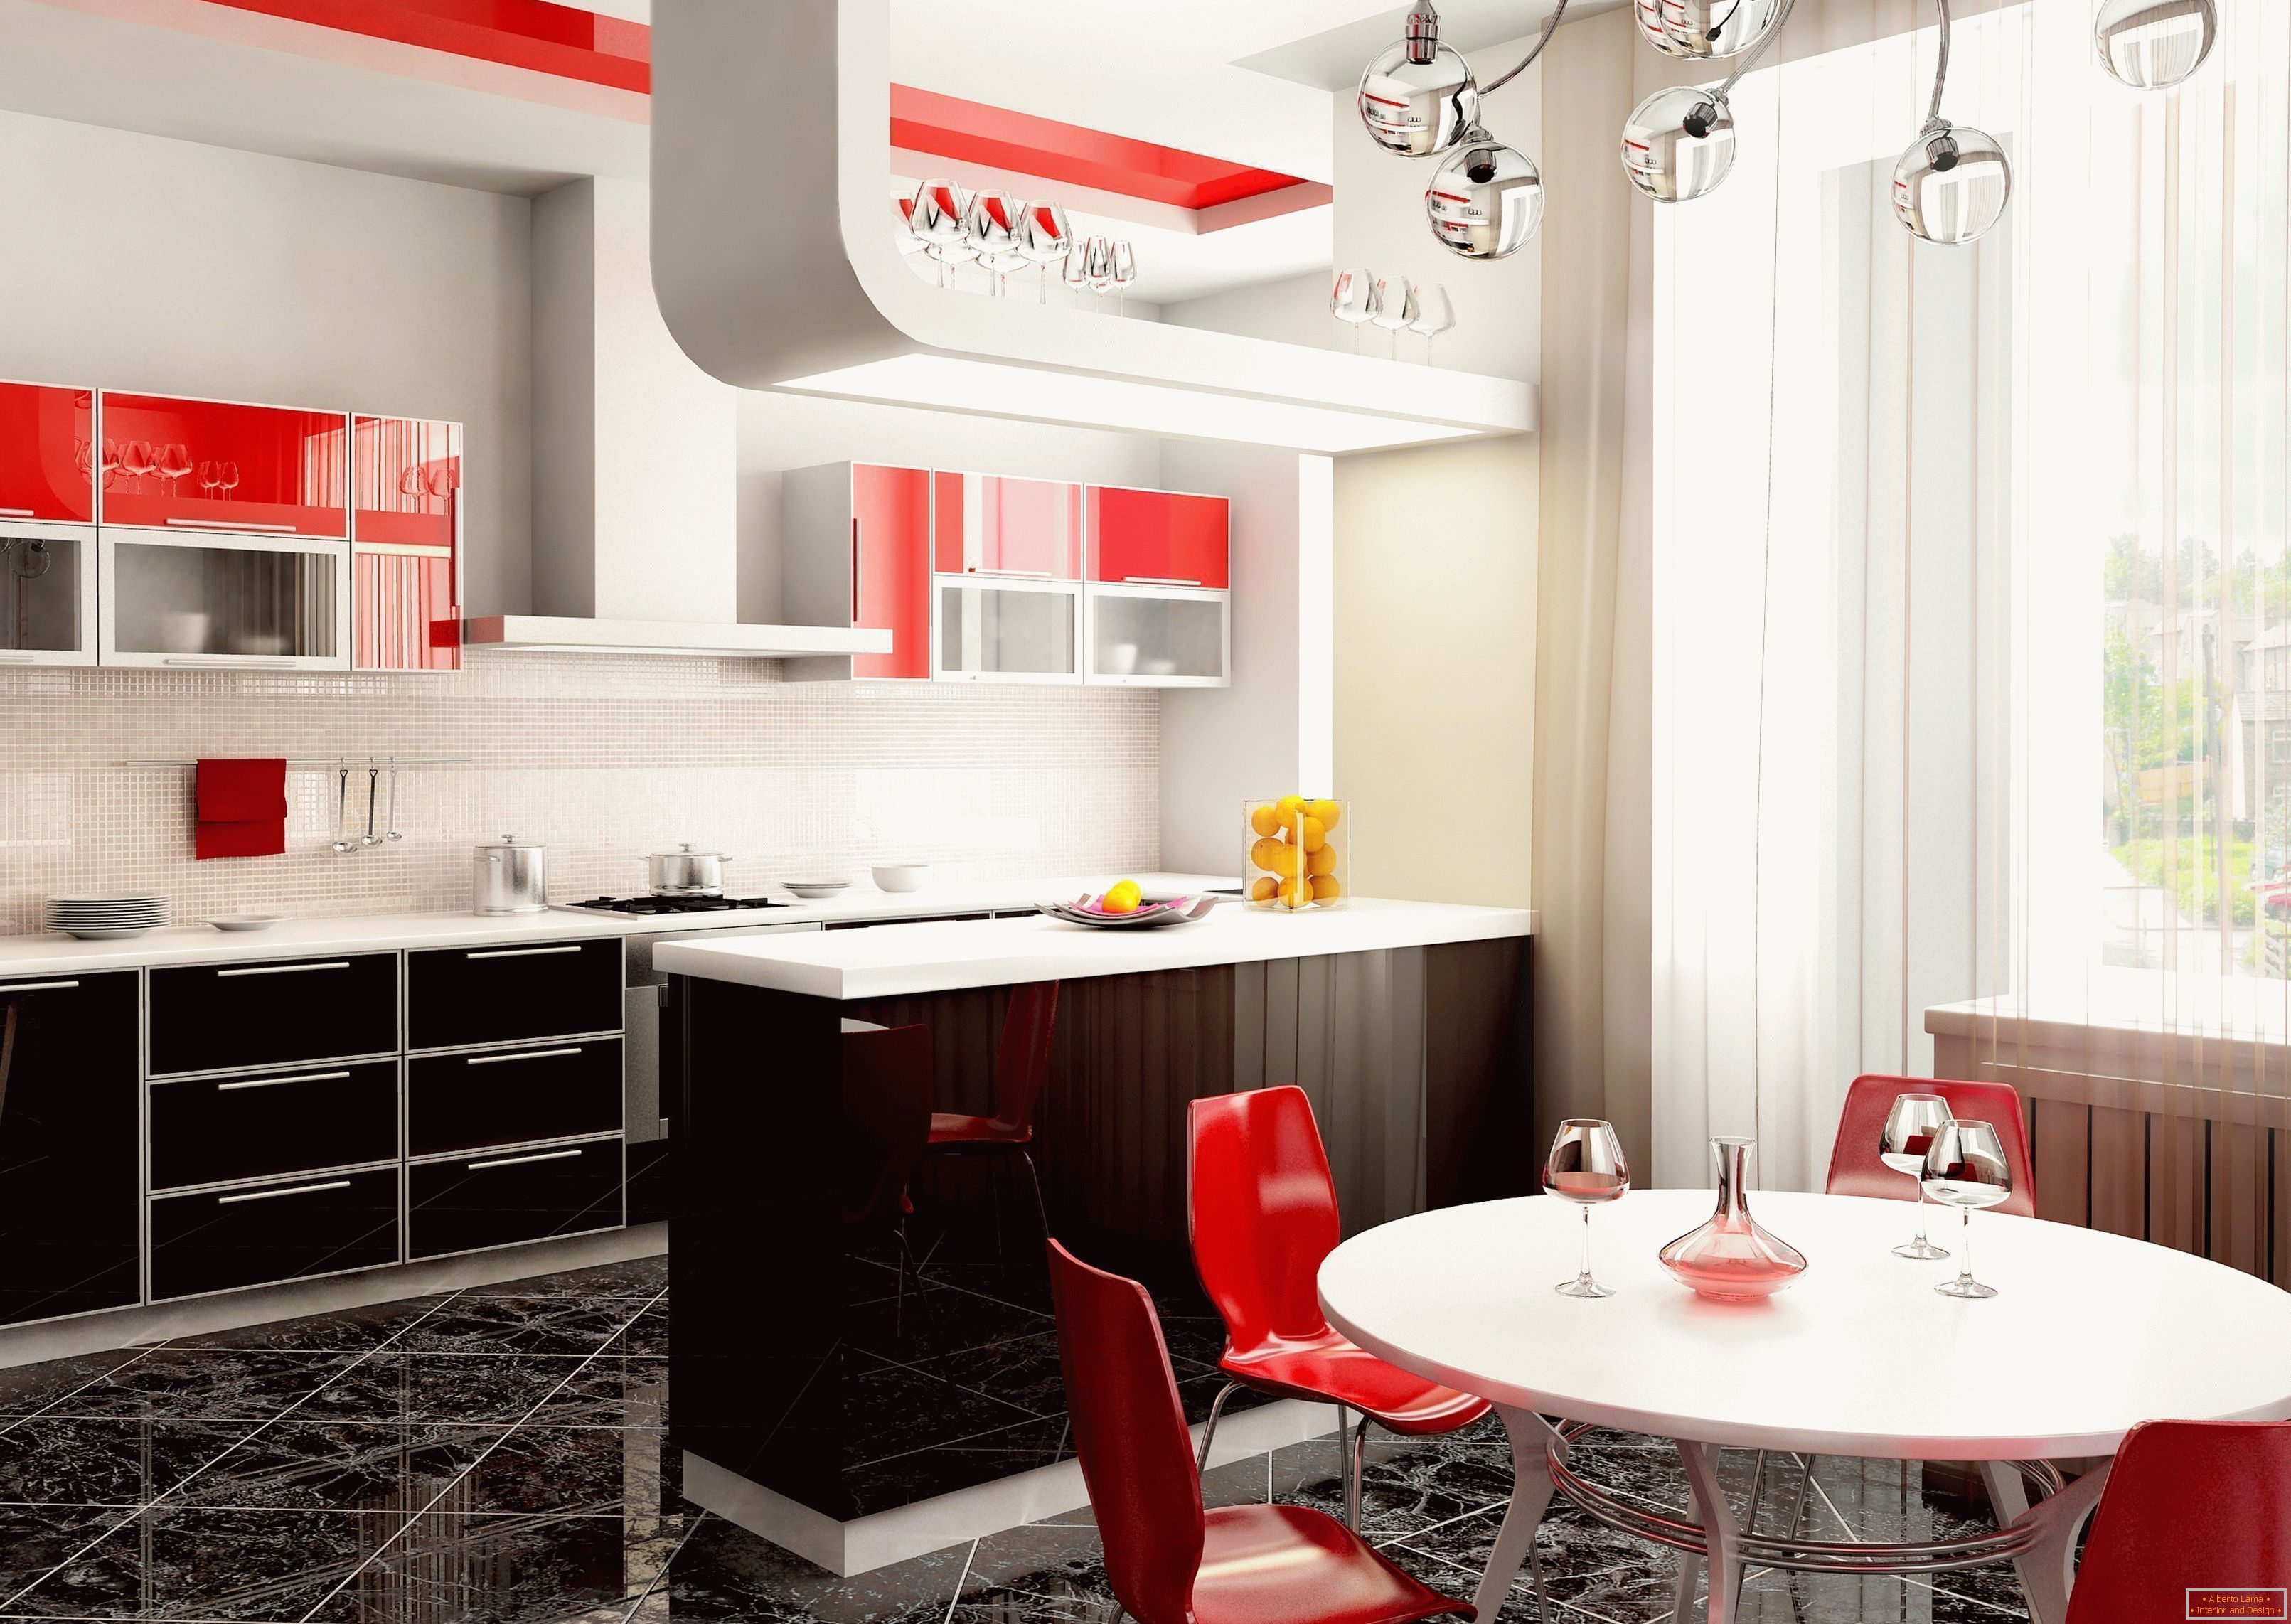 Варианты интерьера кухни. Интерьер кухни. Дизайнерский интерьер кухни. Красивые современные кухни. Красно-черная кухня в интерьере.